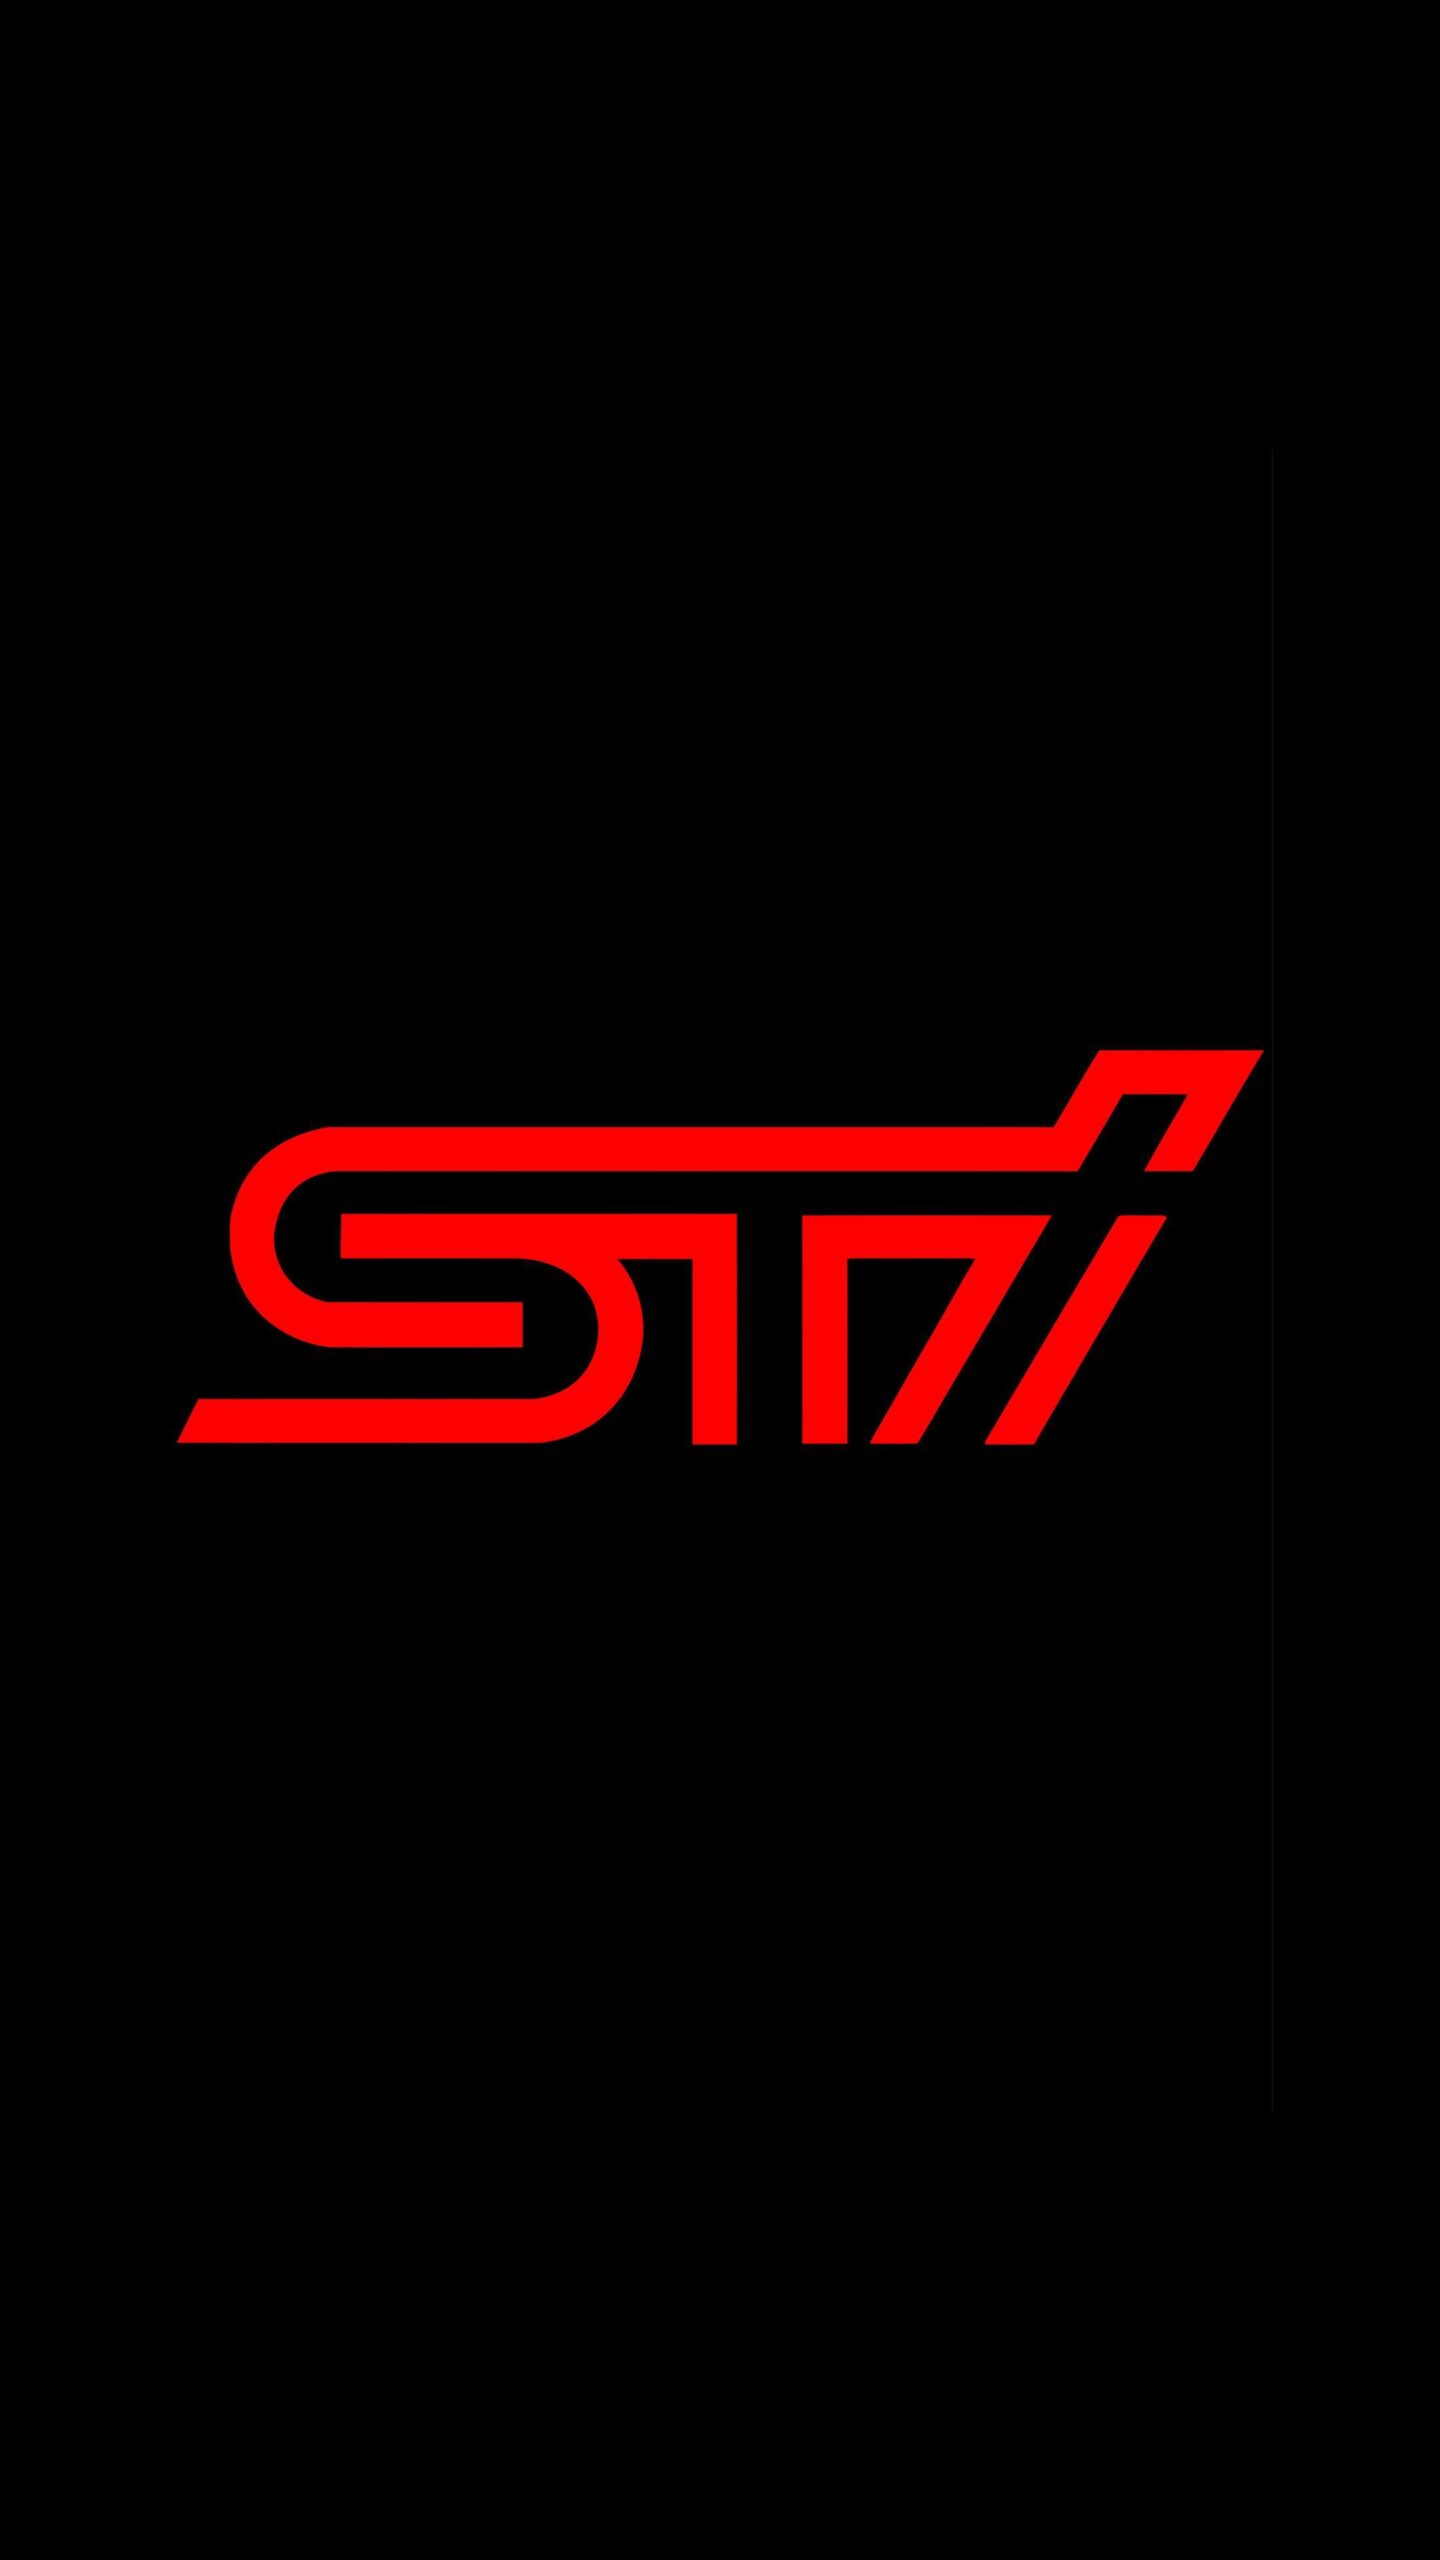 Subaru Sti Logo Wallpapers